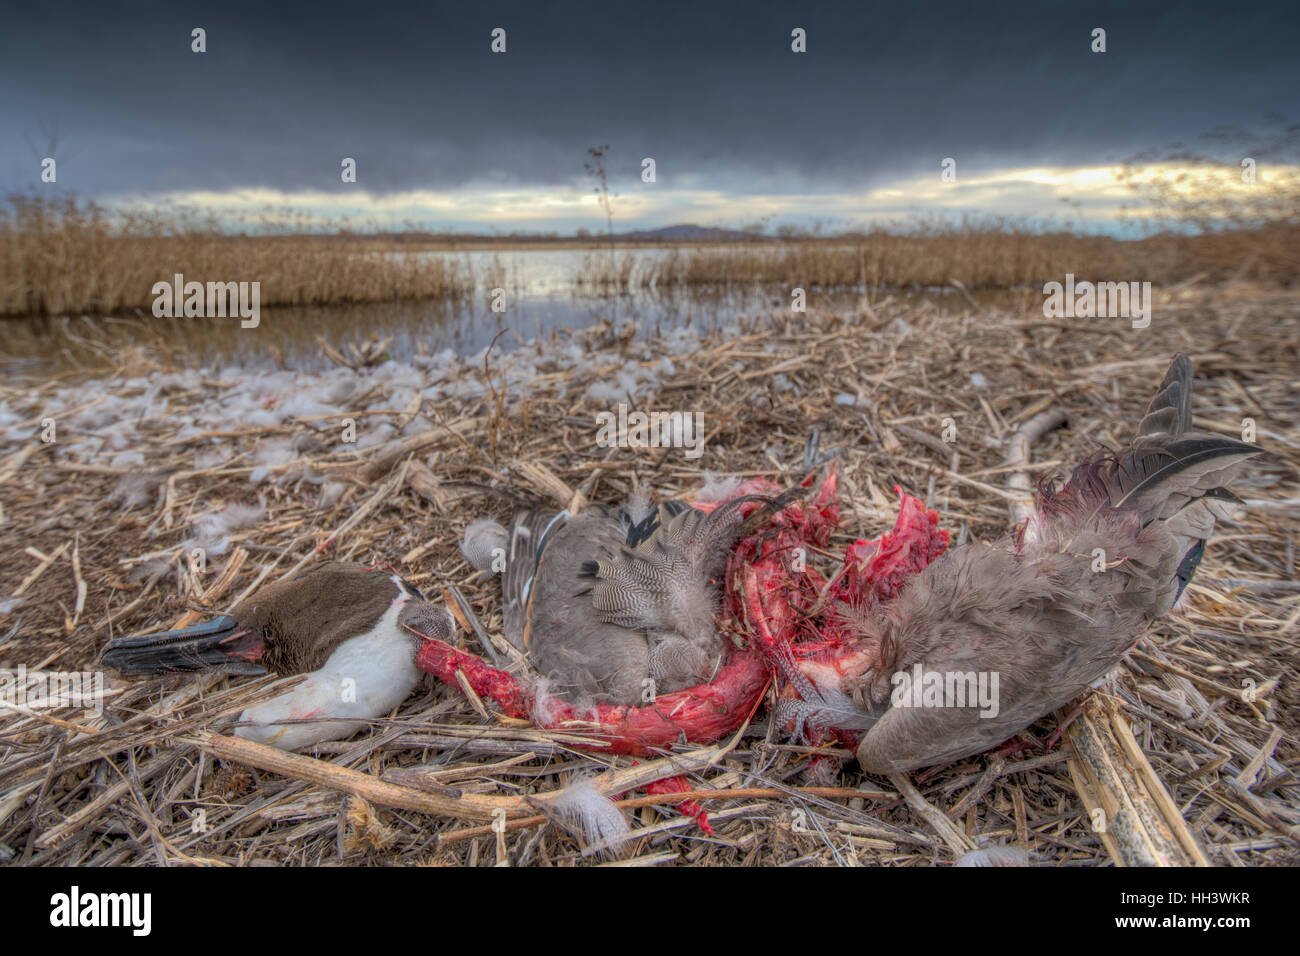 Pintail septentrional (Anas acuta), drake muerto y parcialmente comido por un halcón o águila. El Bosque del Apache NWR, Nuevo México, EE.UU.. Foto de stock